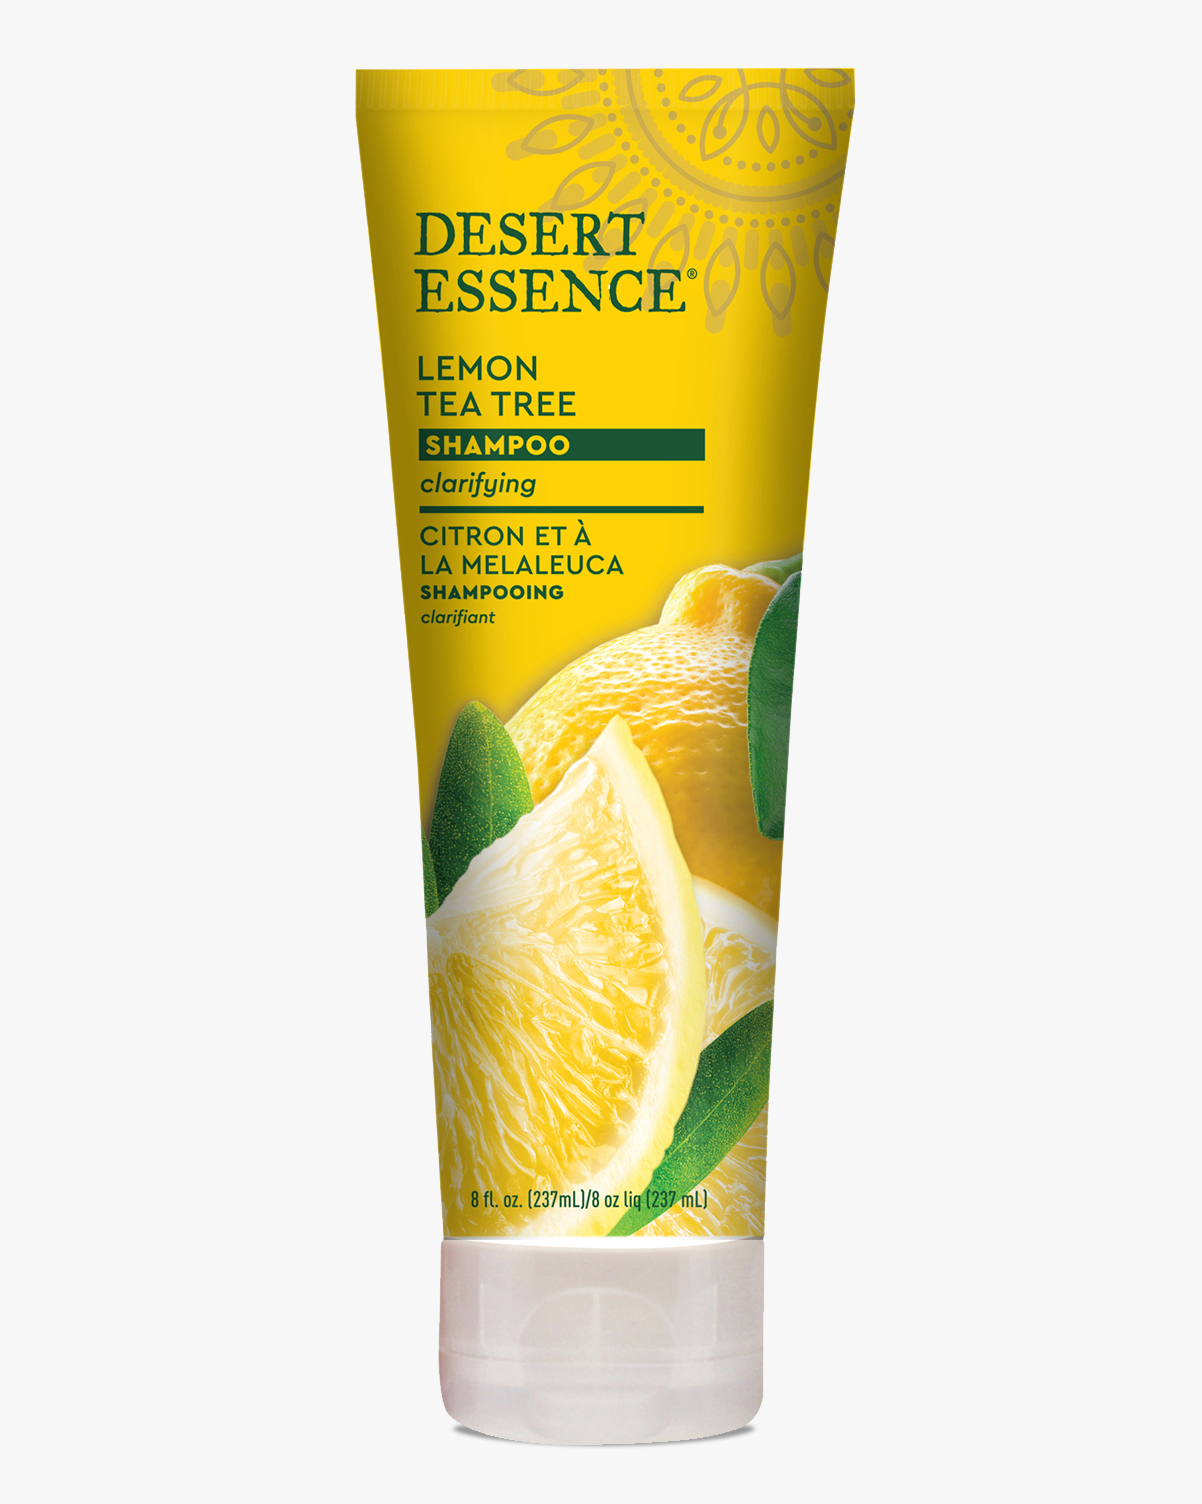 DESERT ESSENCE ORGANICS Lemon Tea Tree Shampoo